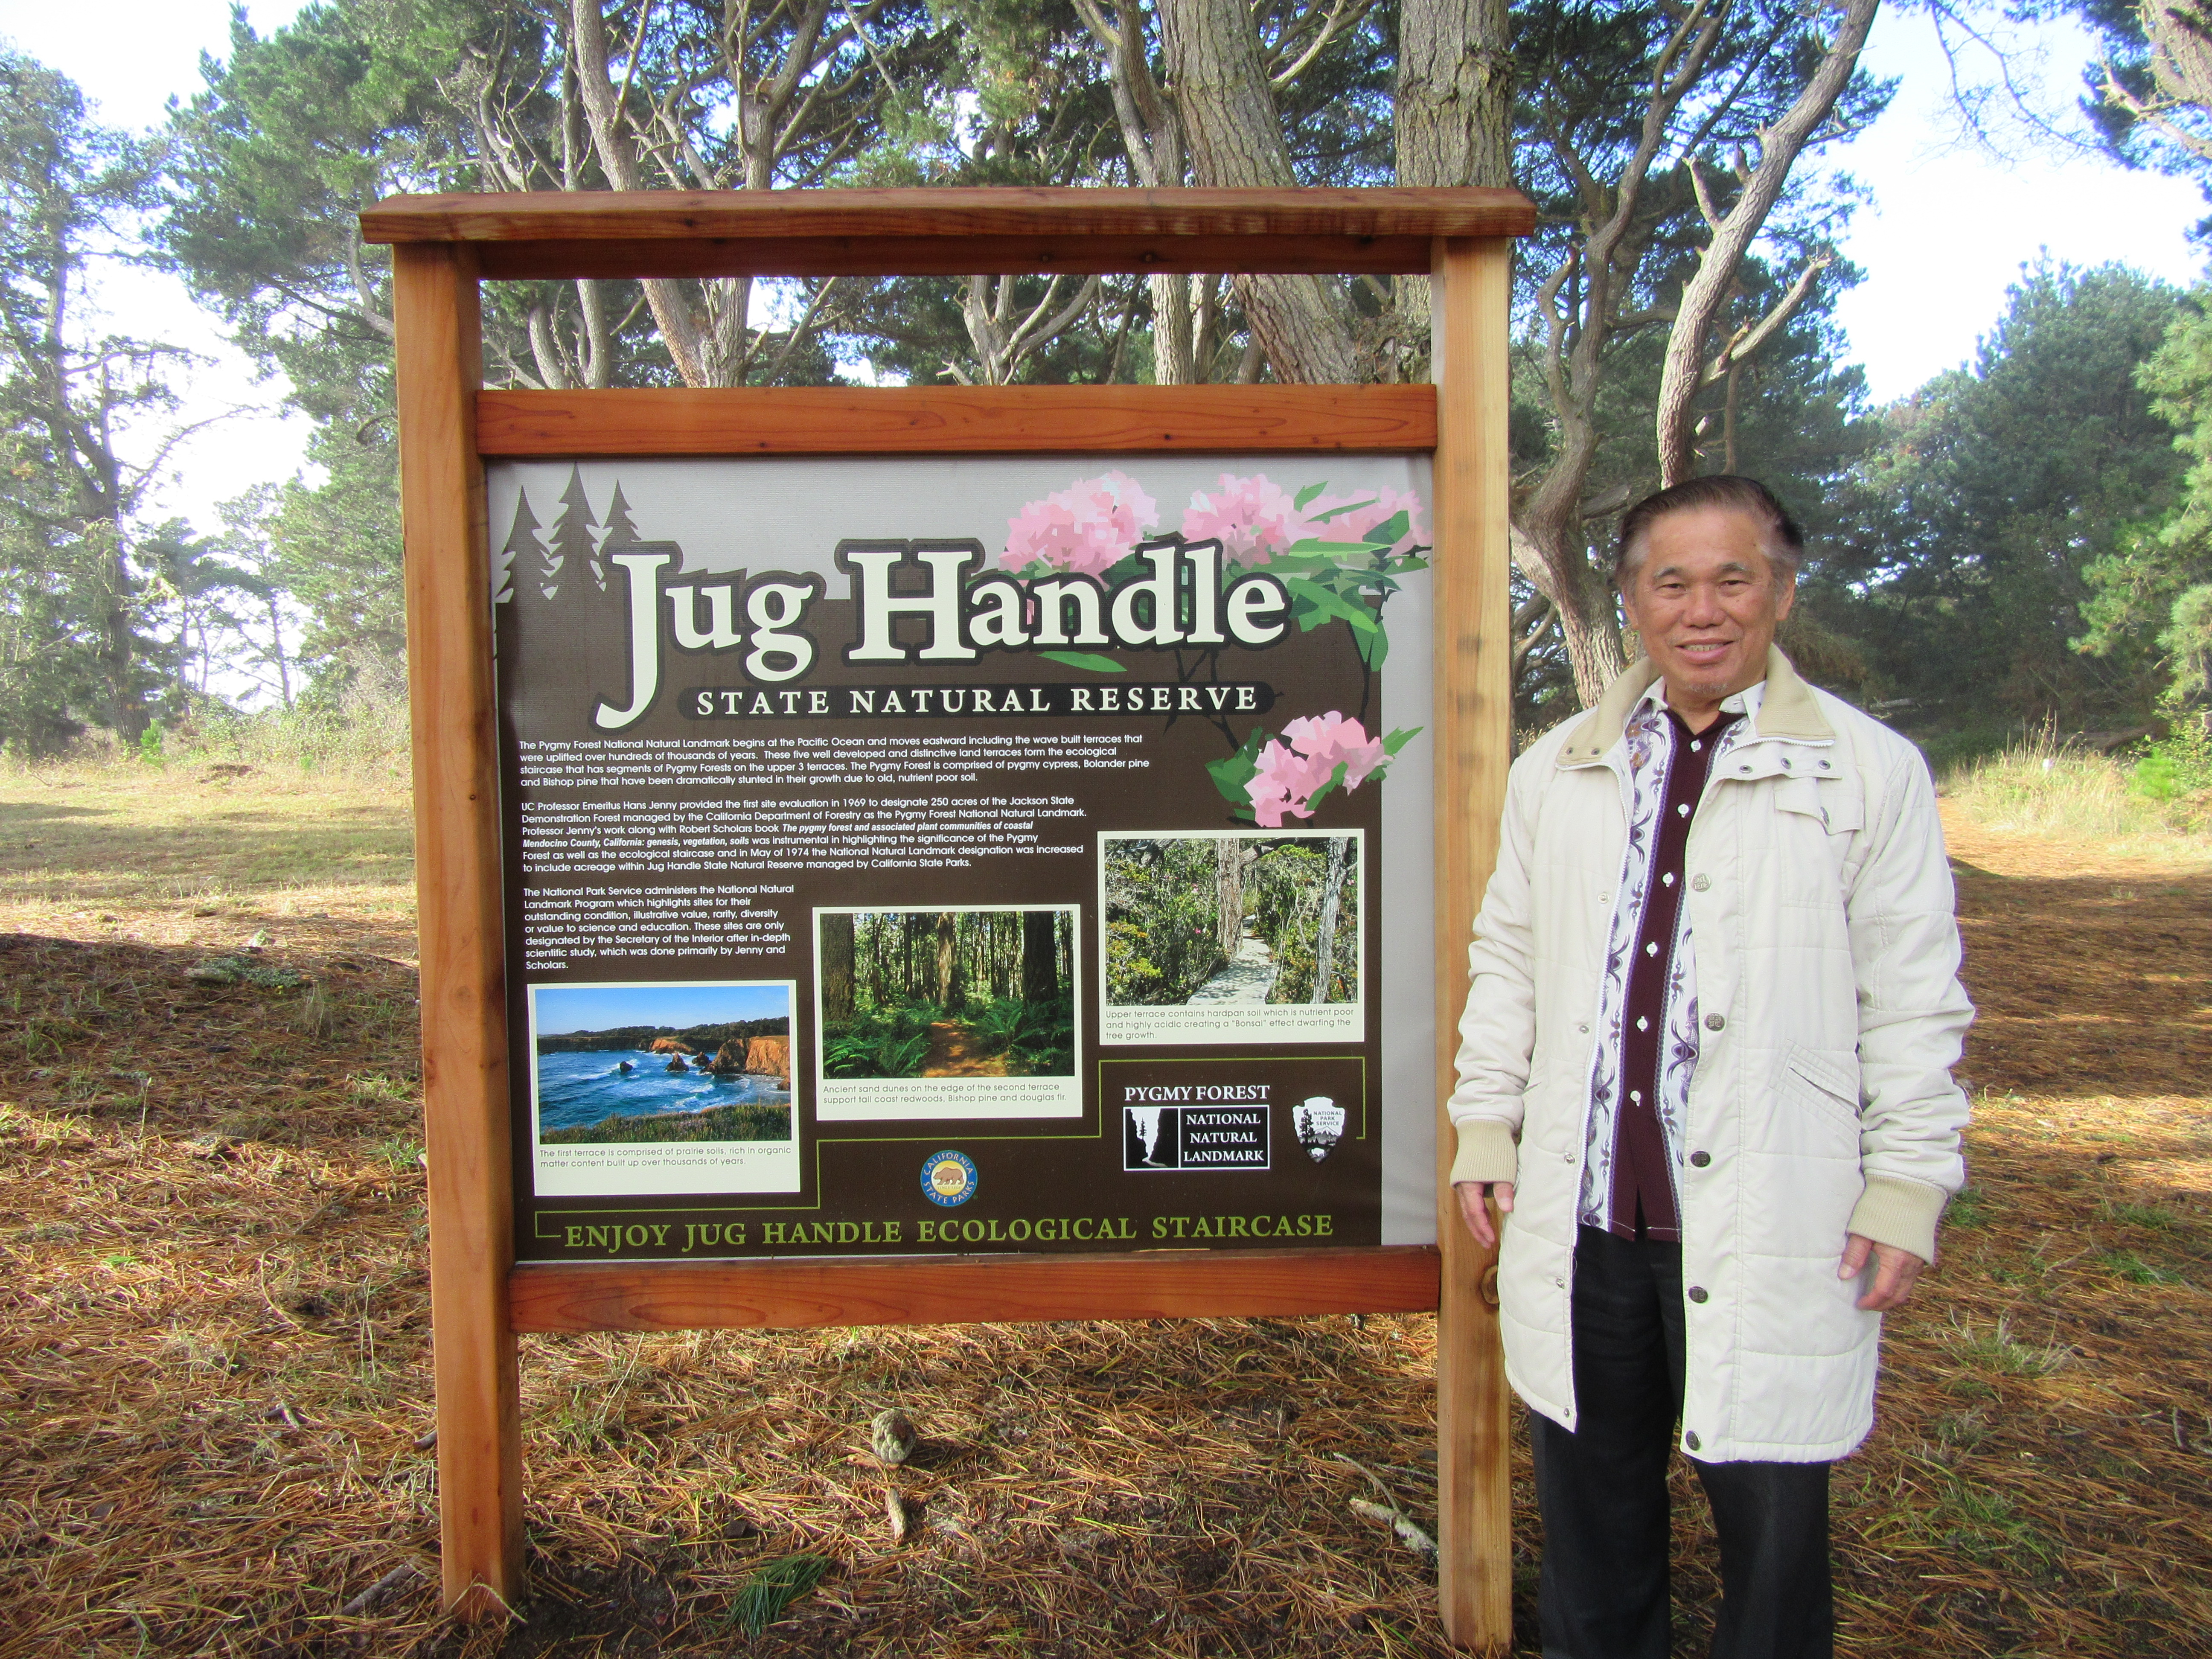 Jug Handle Forest Reserve